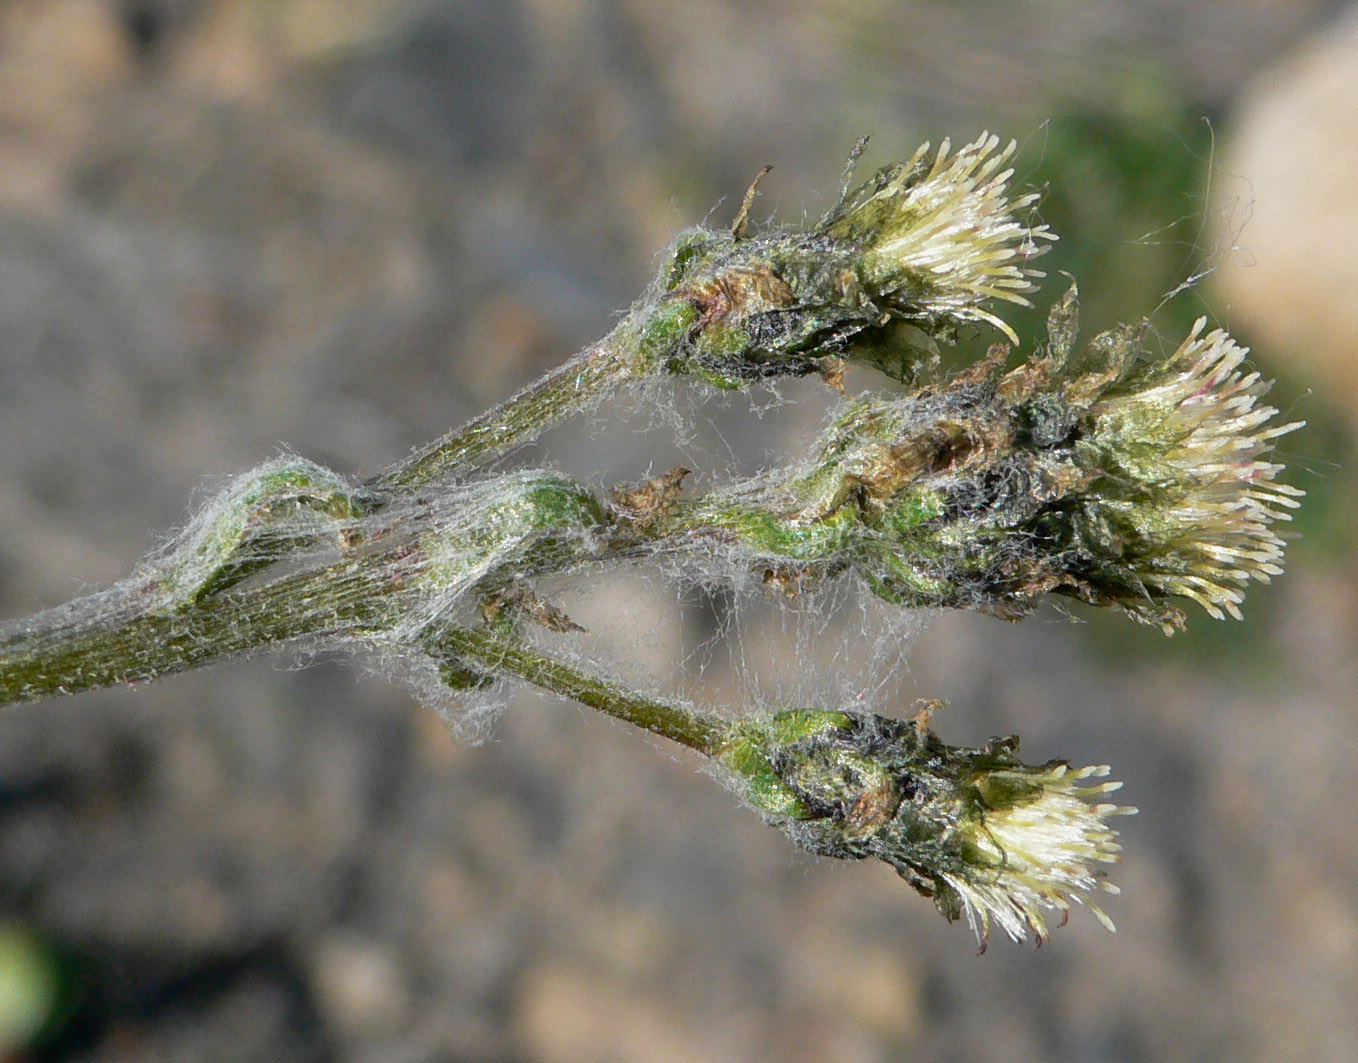 Image of genus Antennaria specimen.